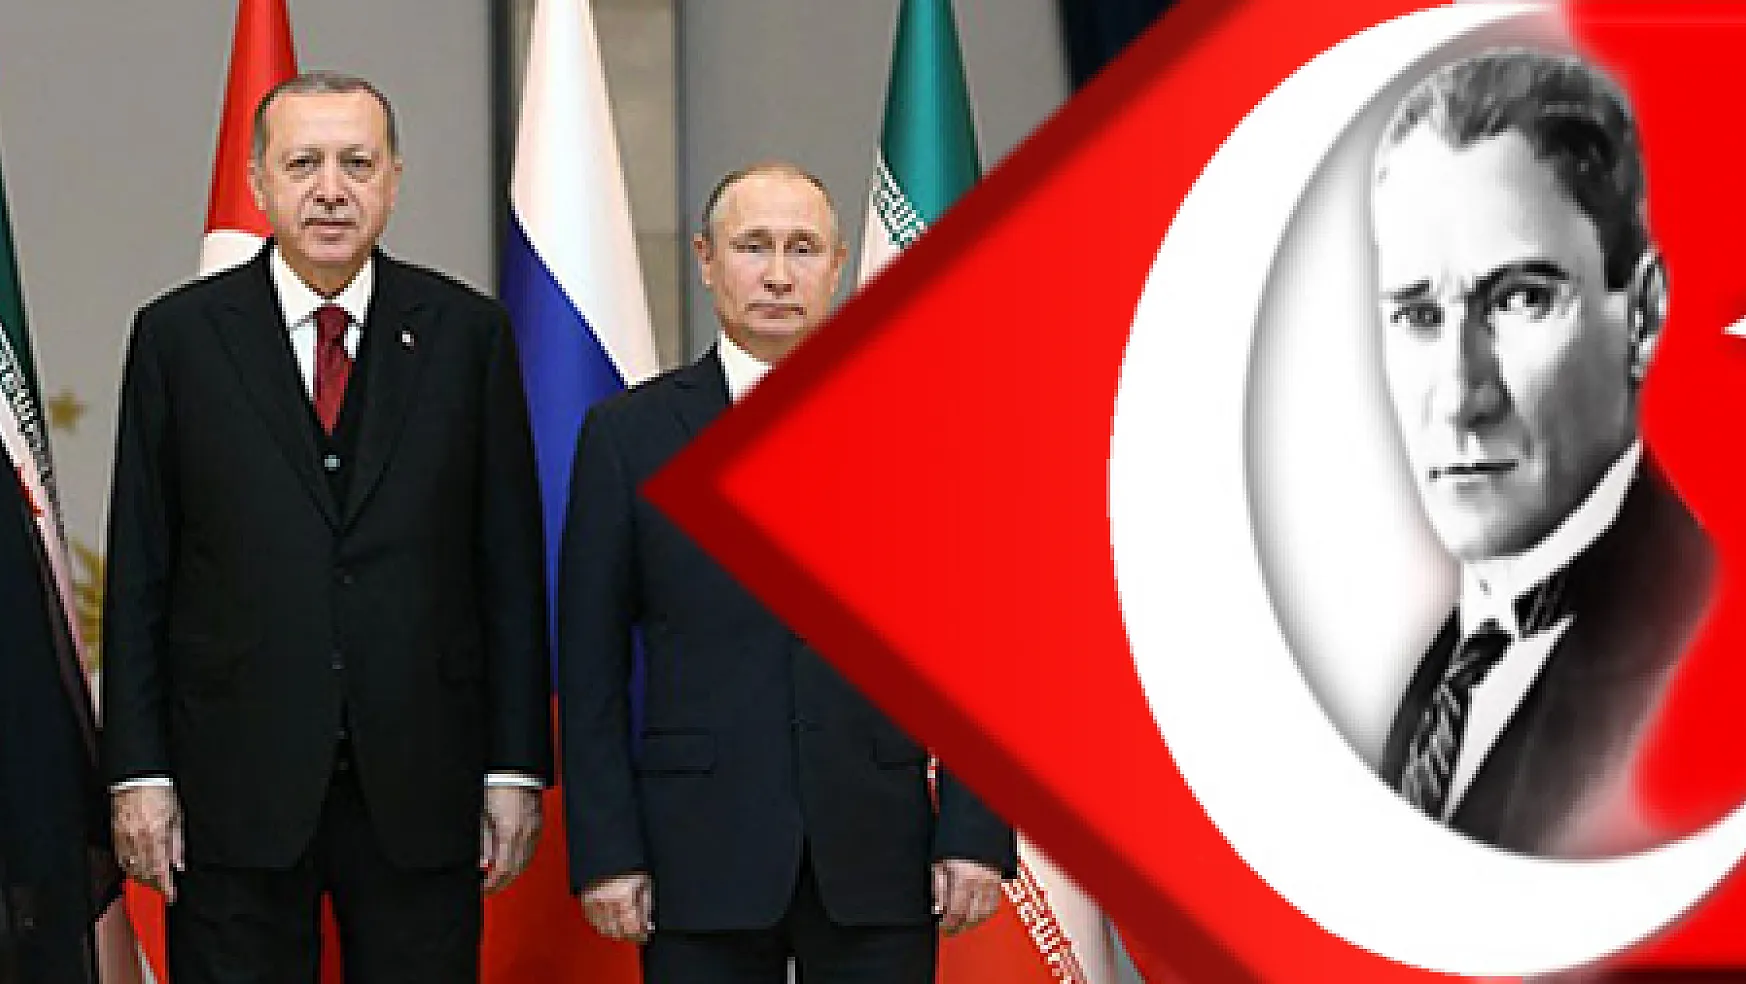 Üçlü zirve sonrası Erdoğan, Putin ve Ruhani'den ortak açıklama